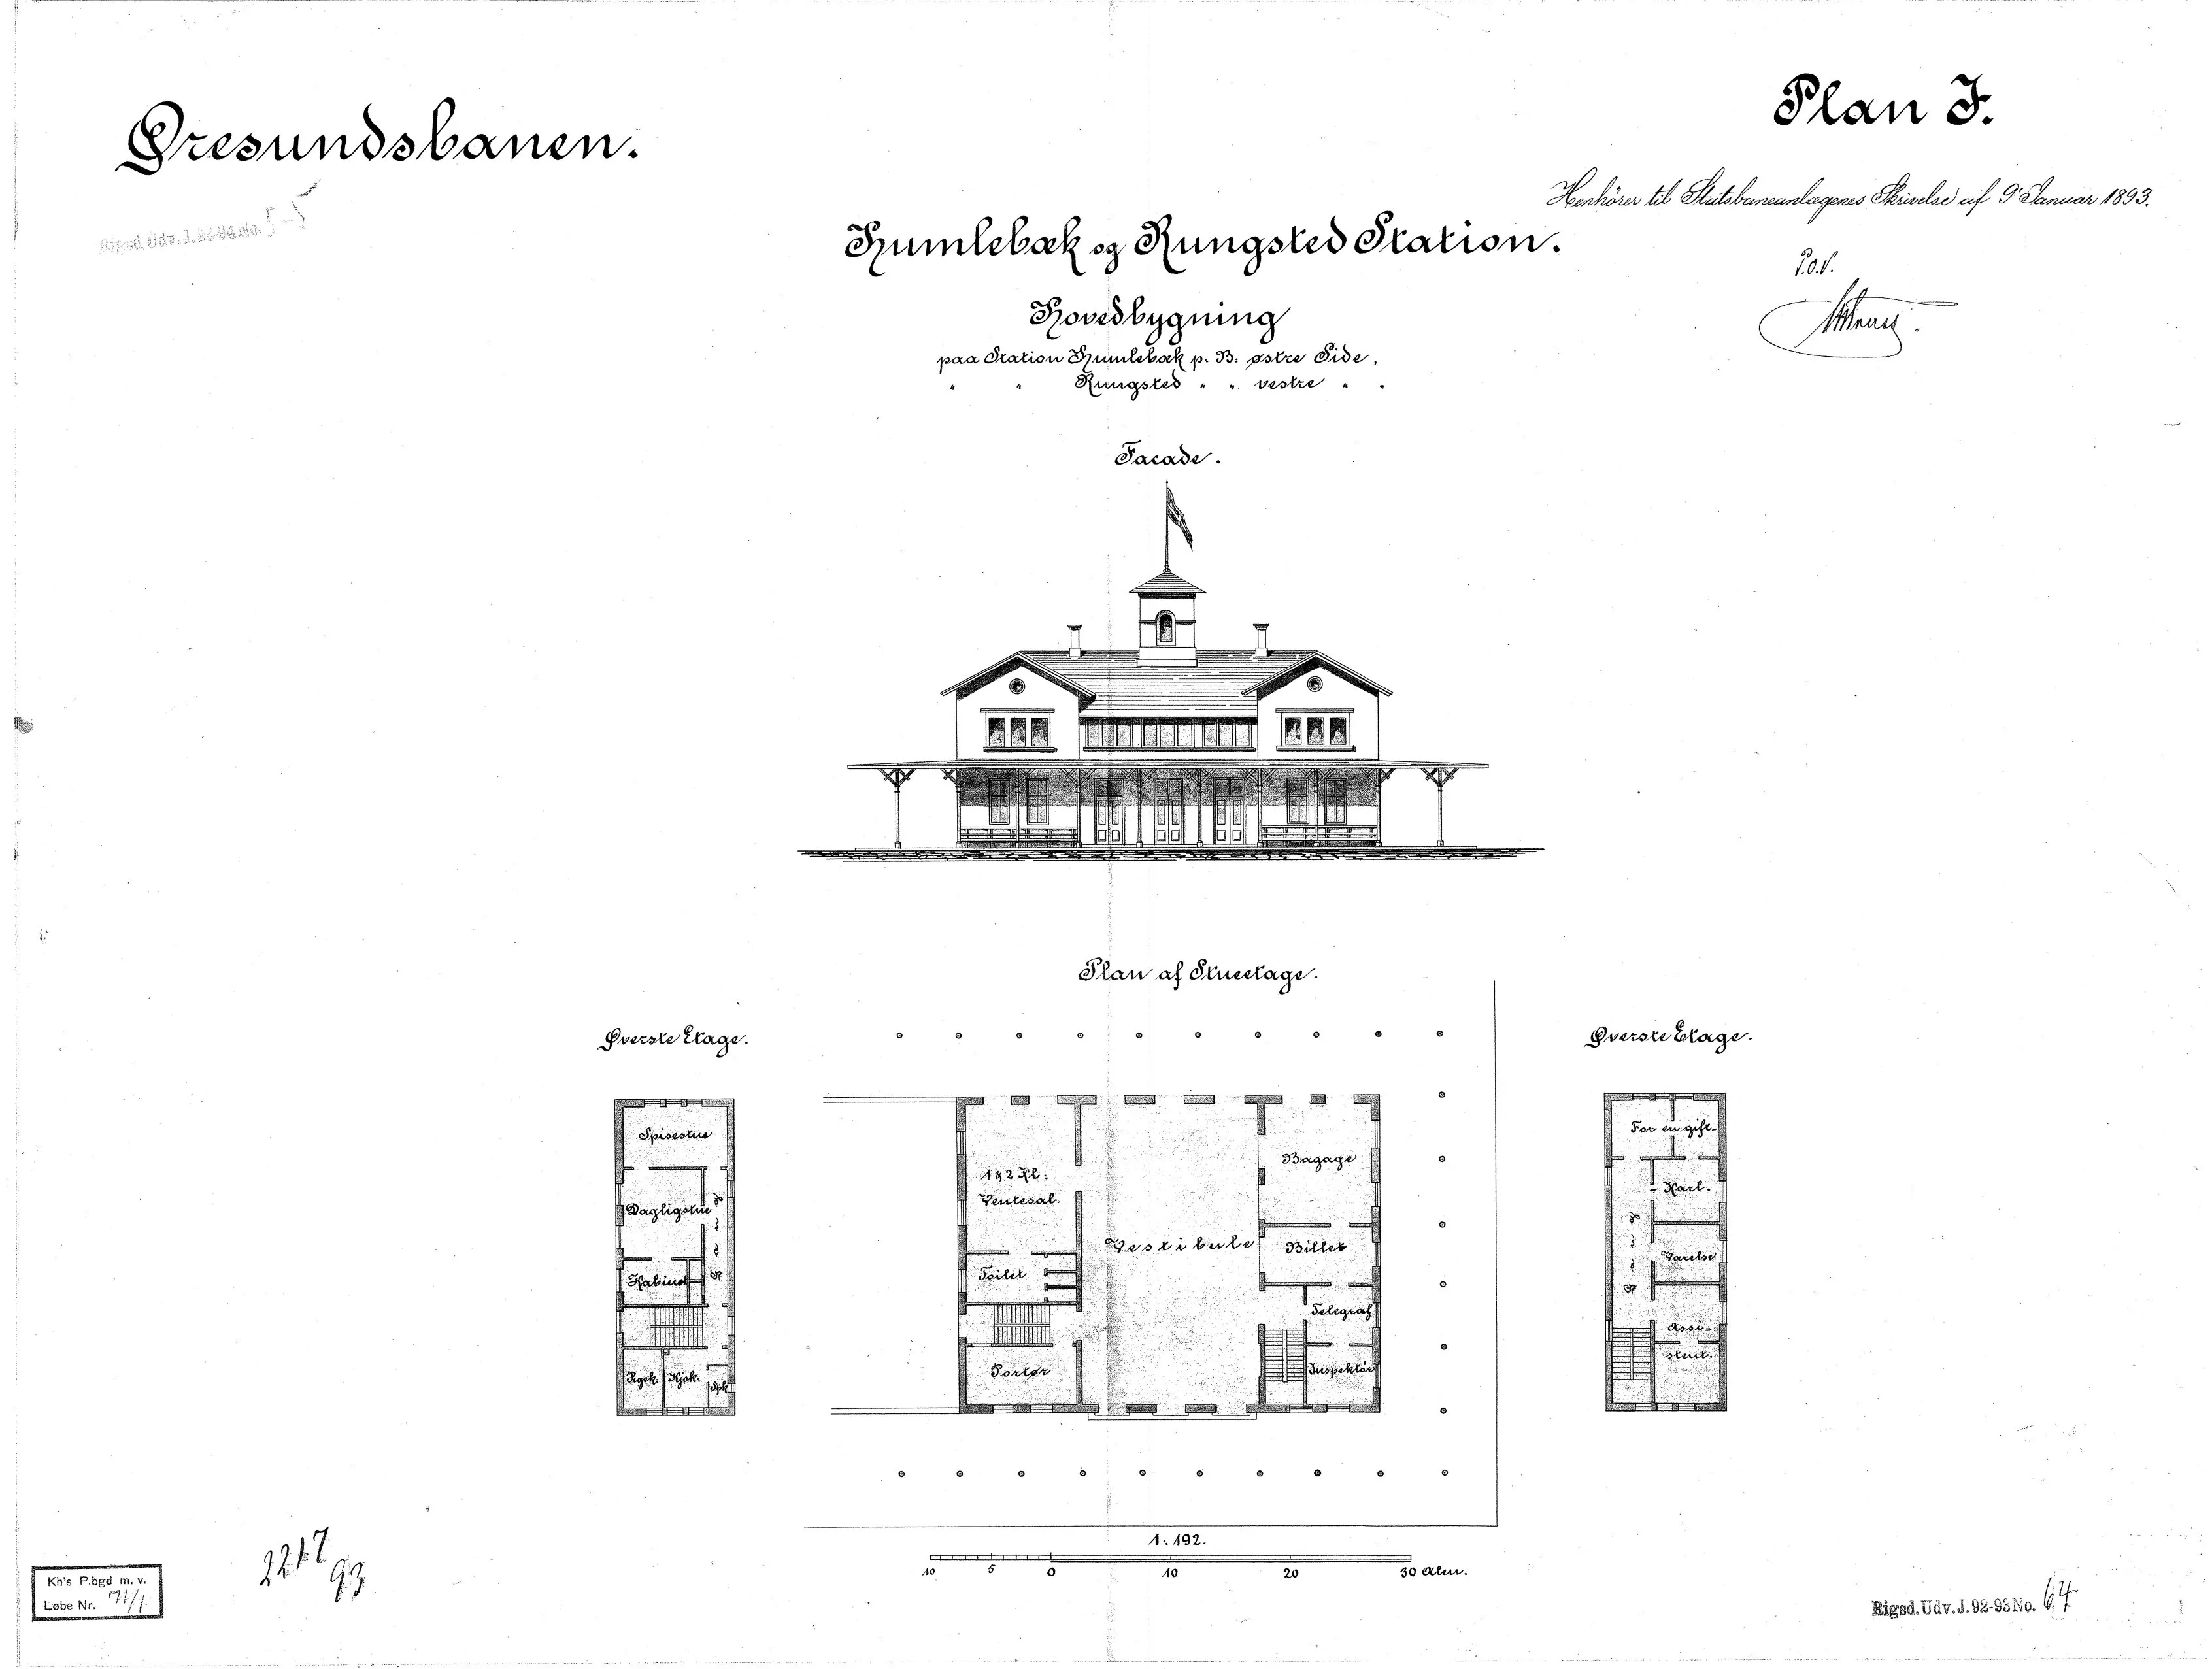 Tegning af forslag til Rungsted Kyst Station.